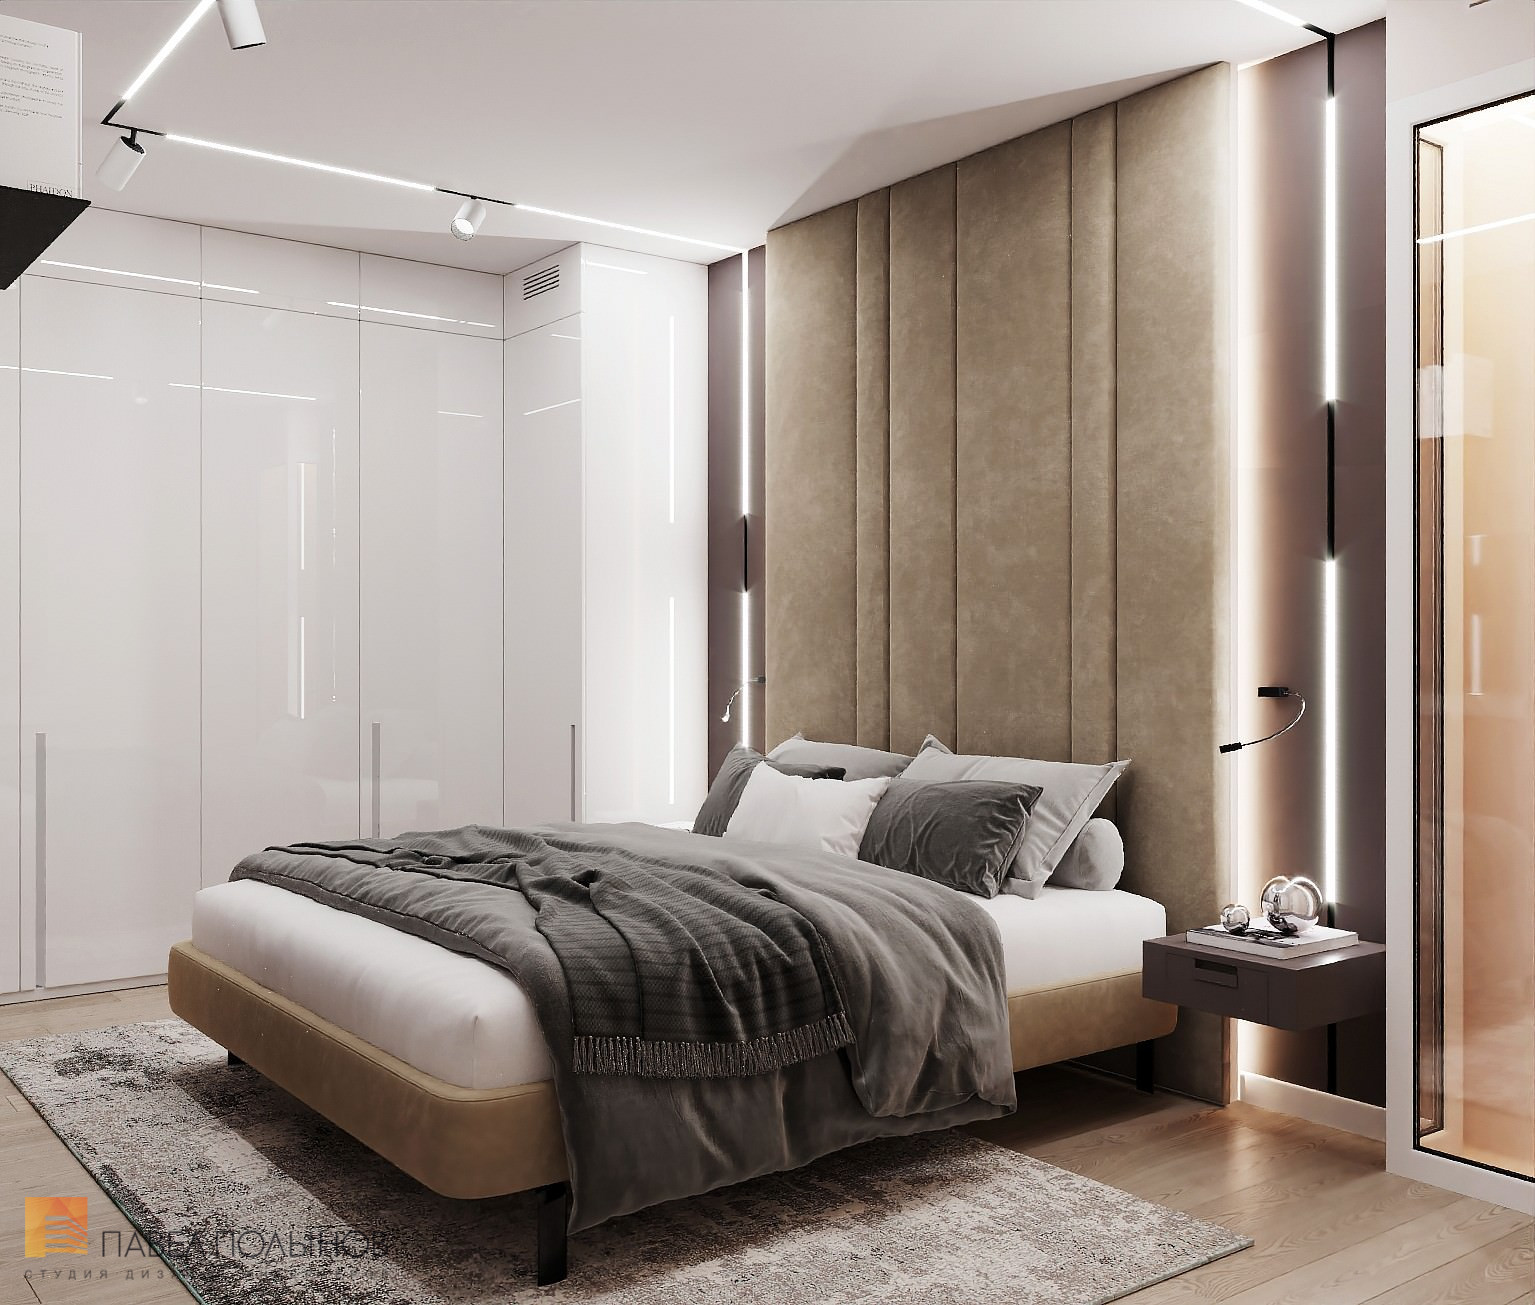 Фото дизайн интерьера спальни из проекта «ЖК BauHaus, 95 кв.м.»